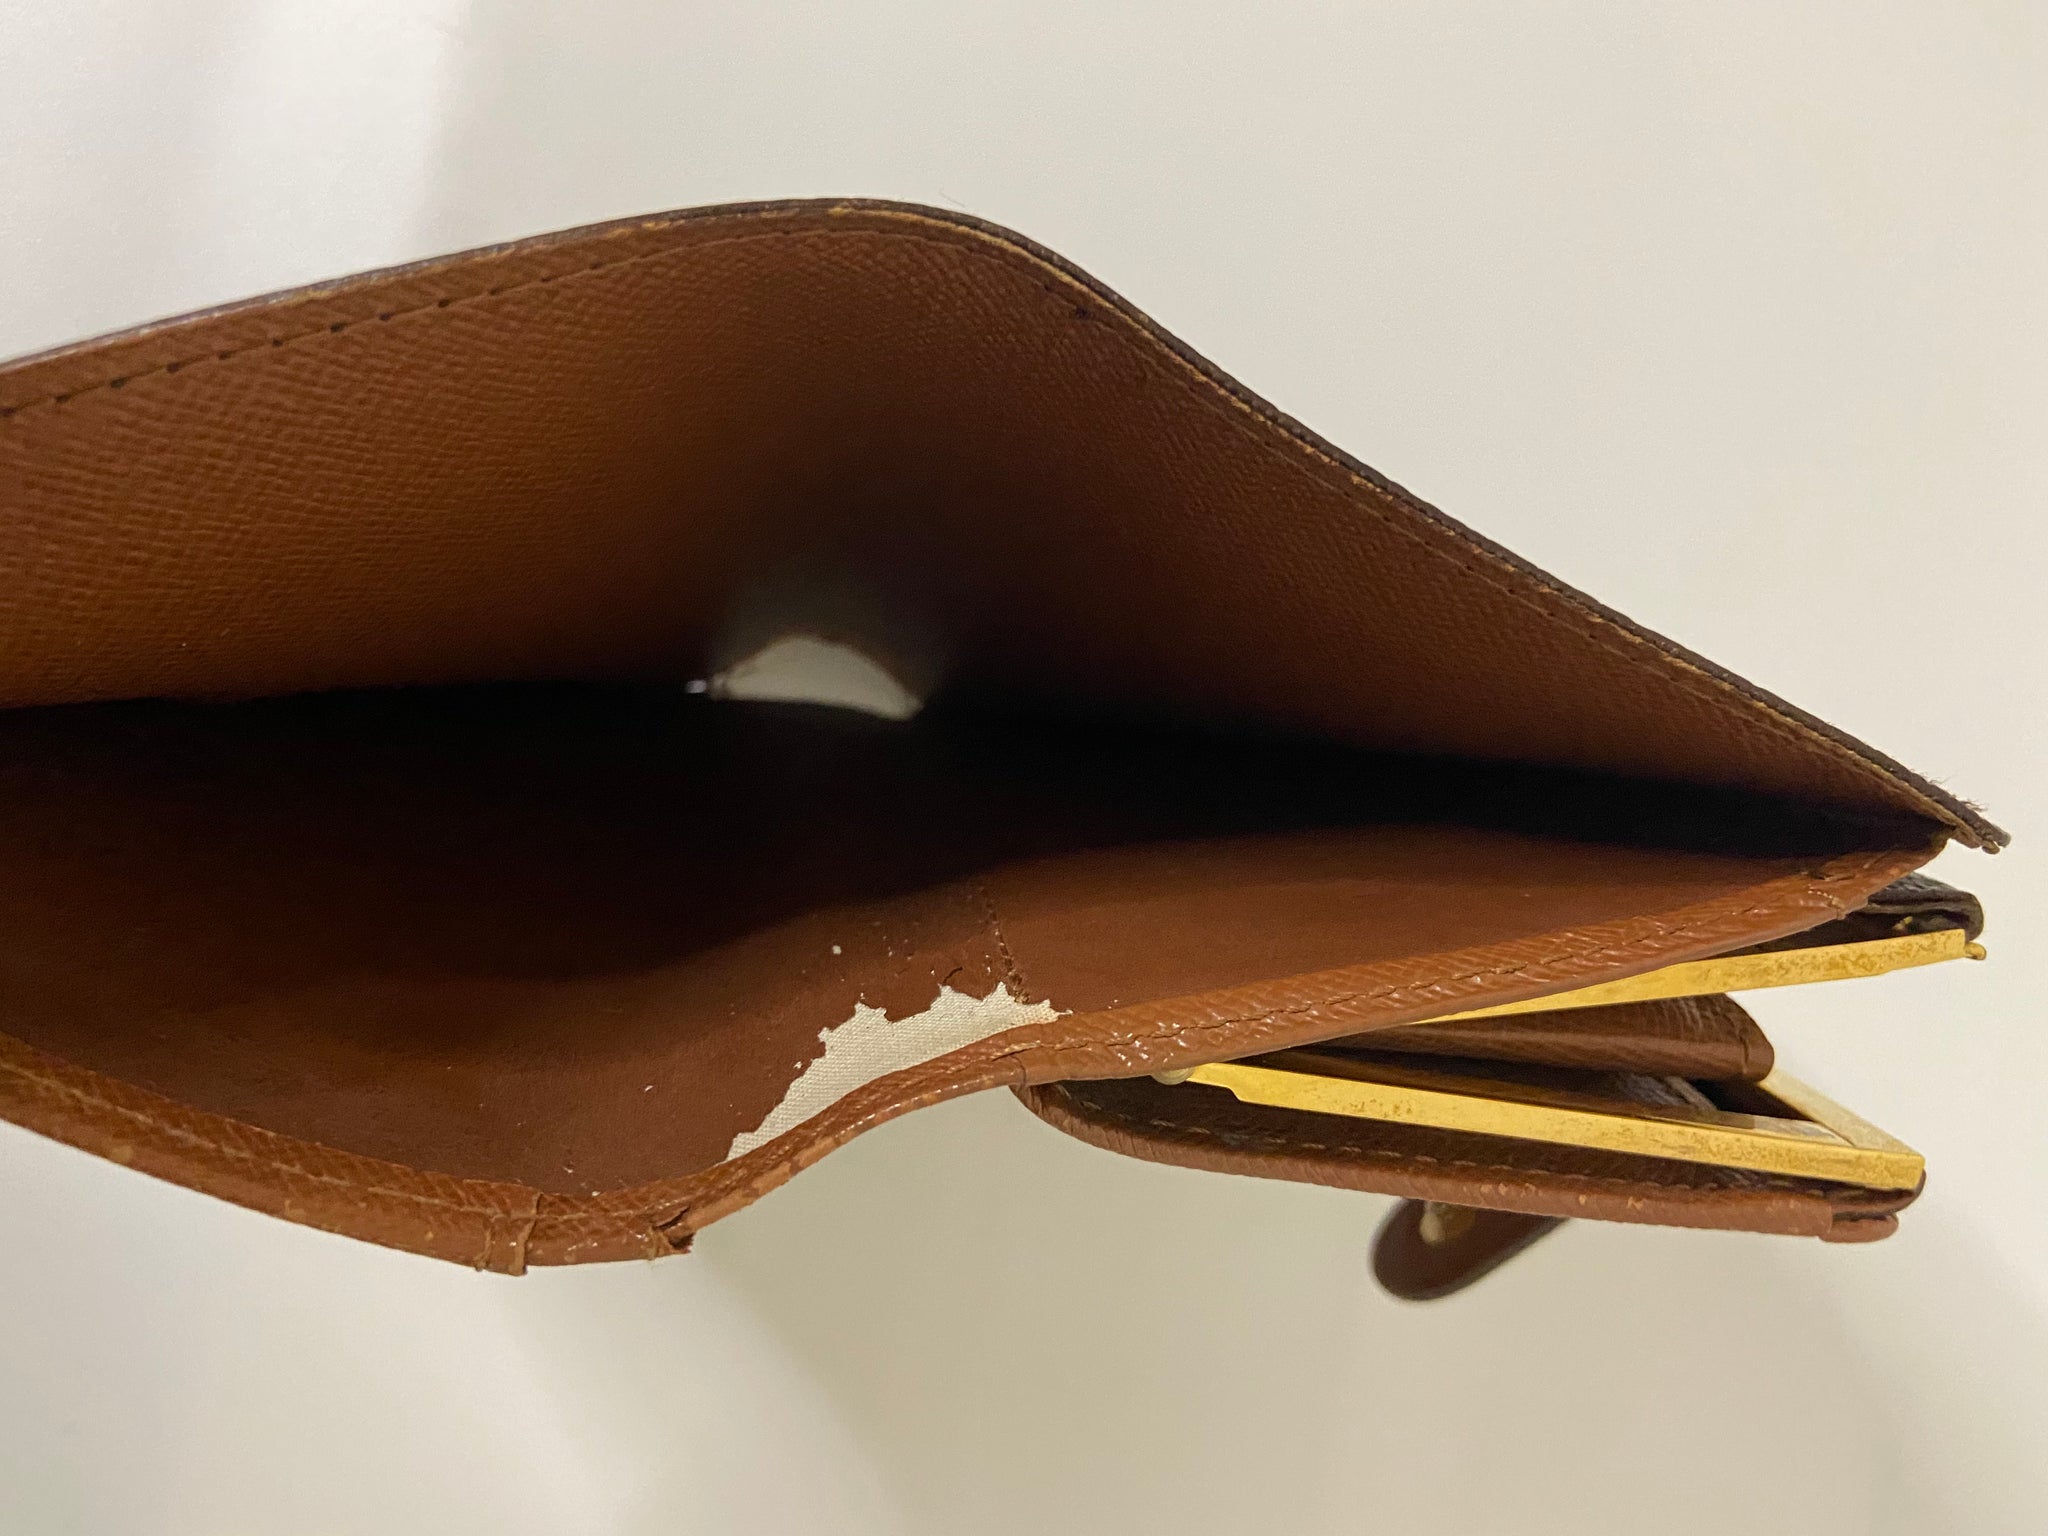 LV kisslock wallet